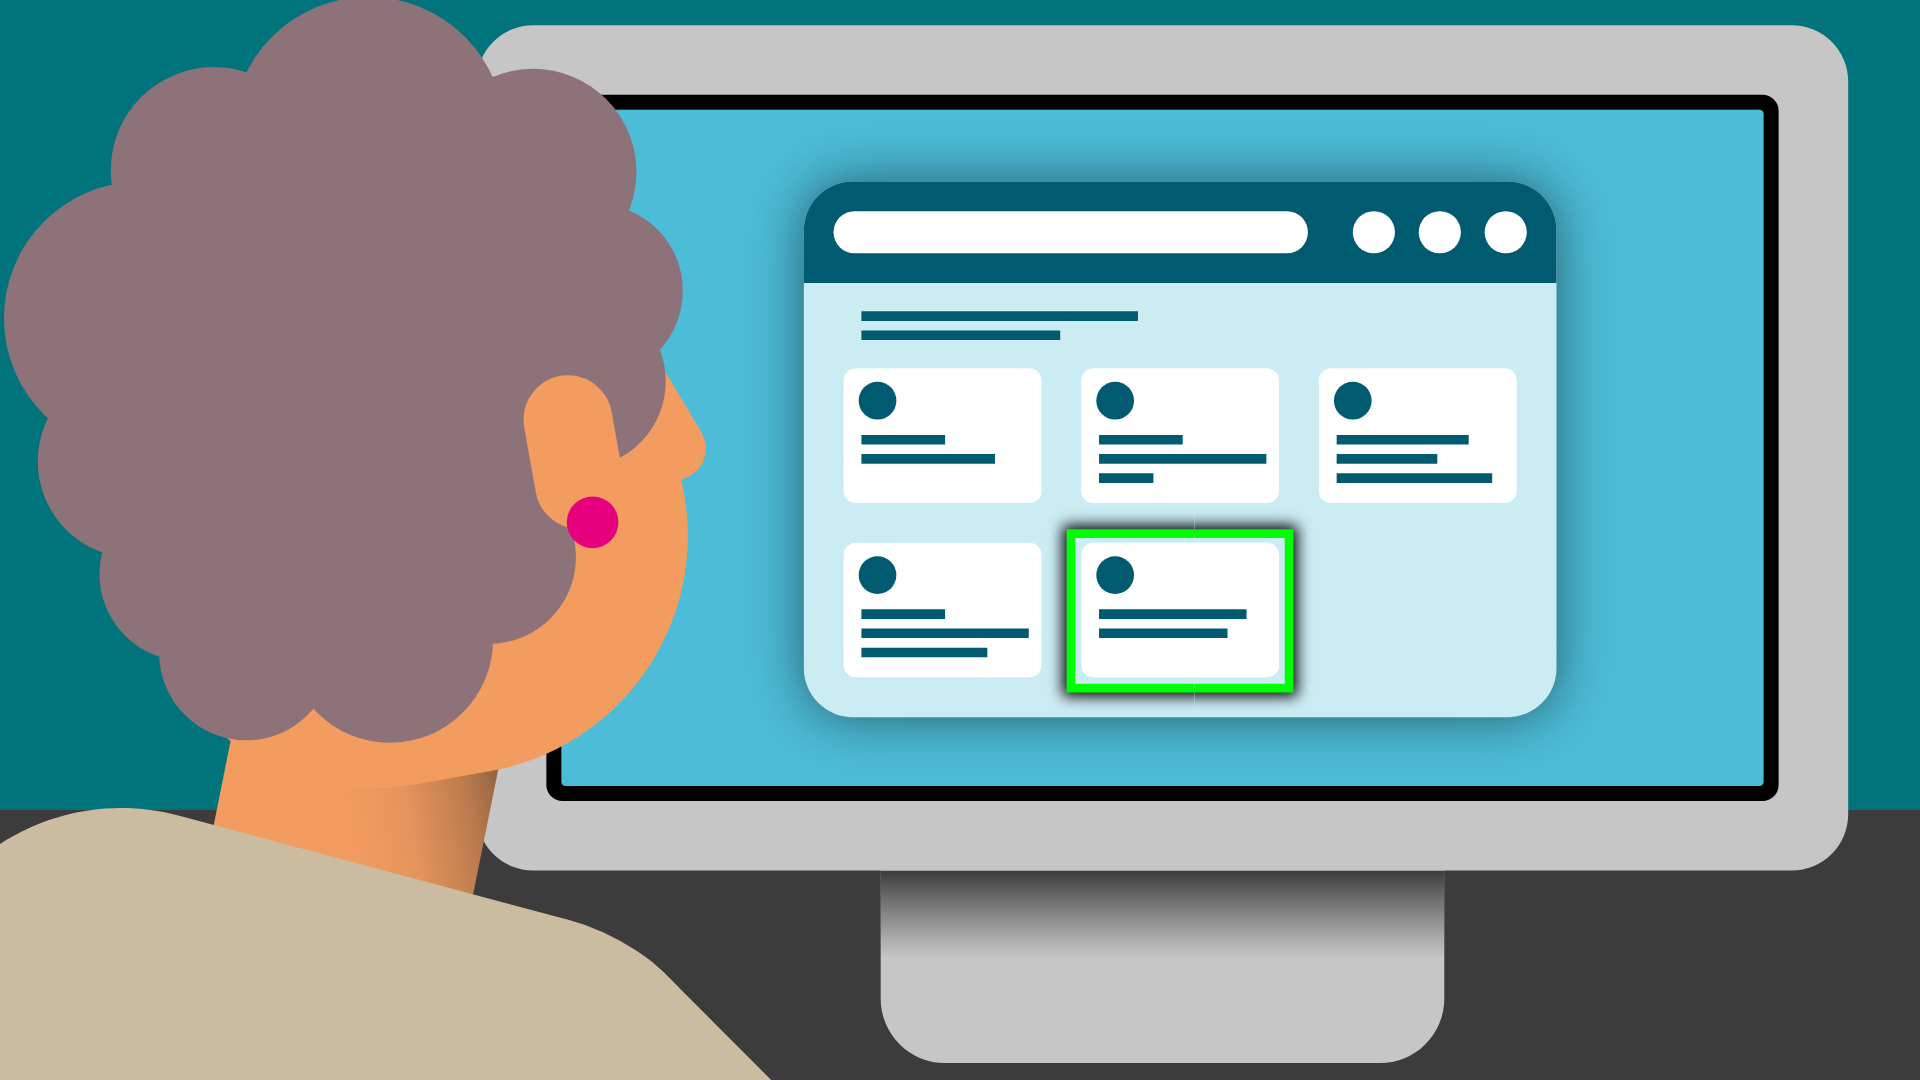 Eine alte Frau mit lockigen grauen Haaren sitzt vor einem Bildschirm. Darauf eine Internetseite mit verschiedenen abstrakten Auswahlfeldern. Eins ist grün markiert.